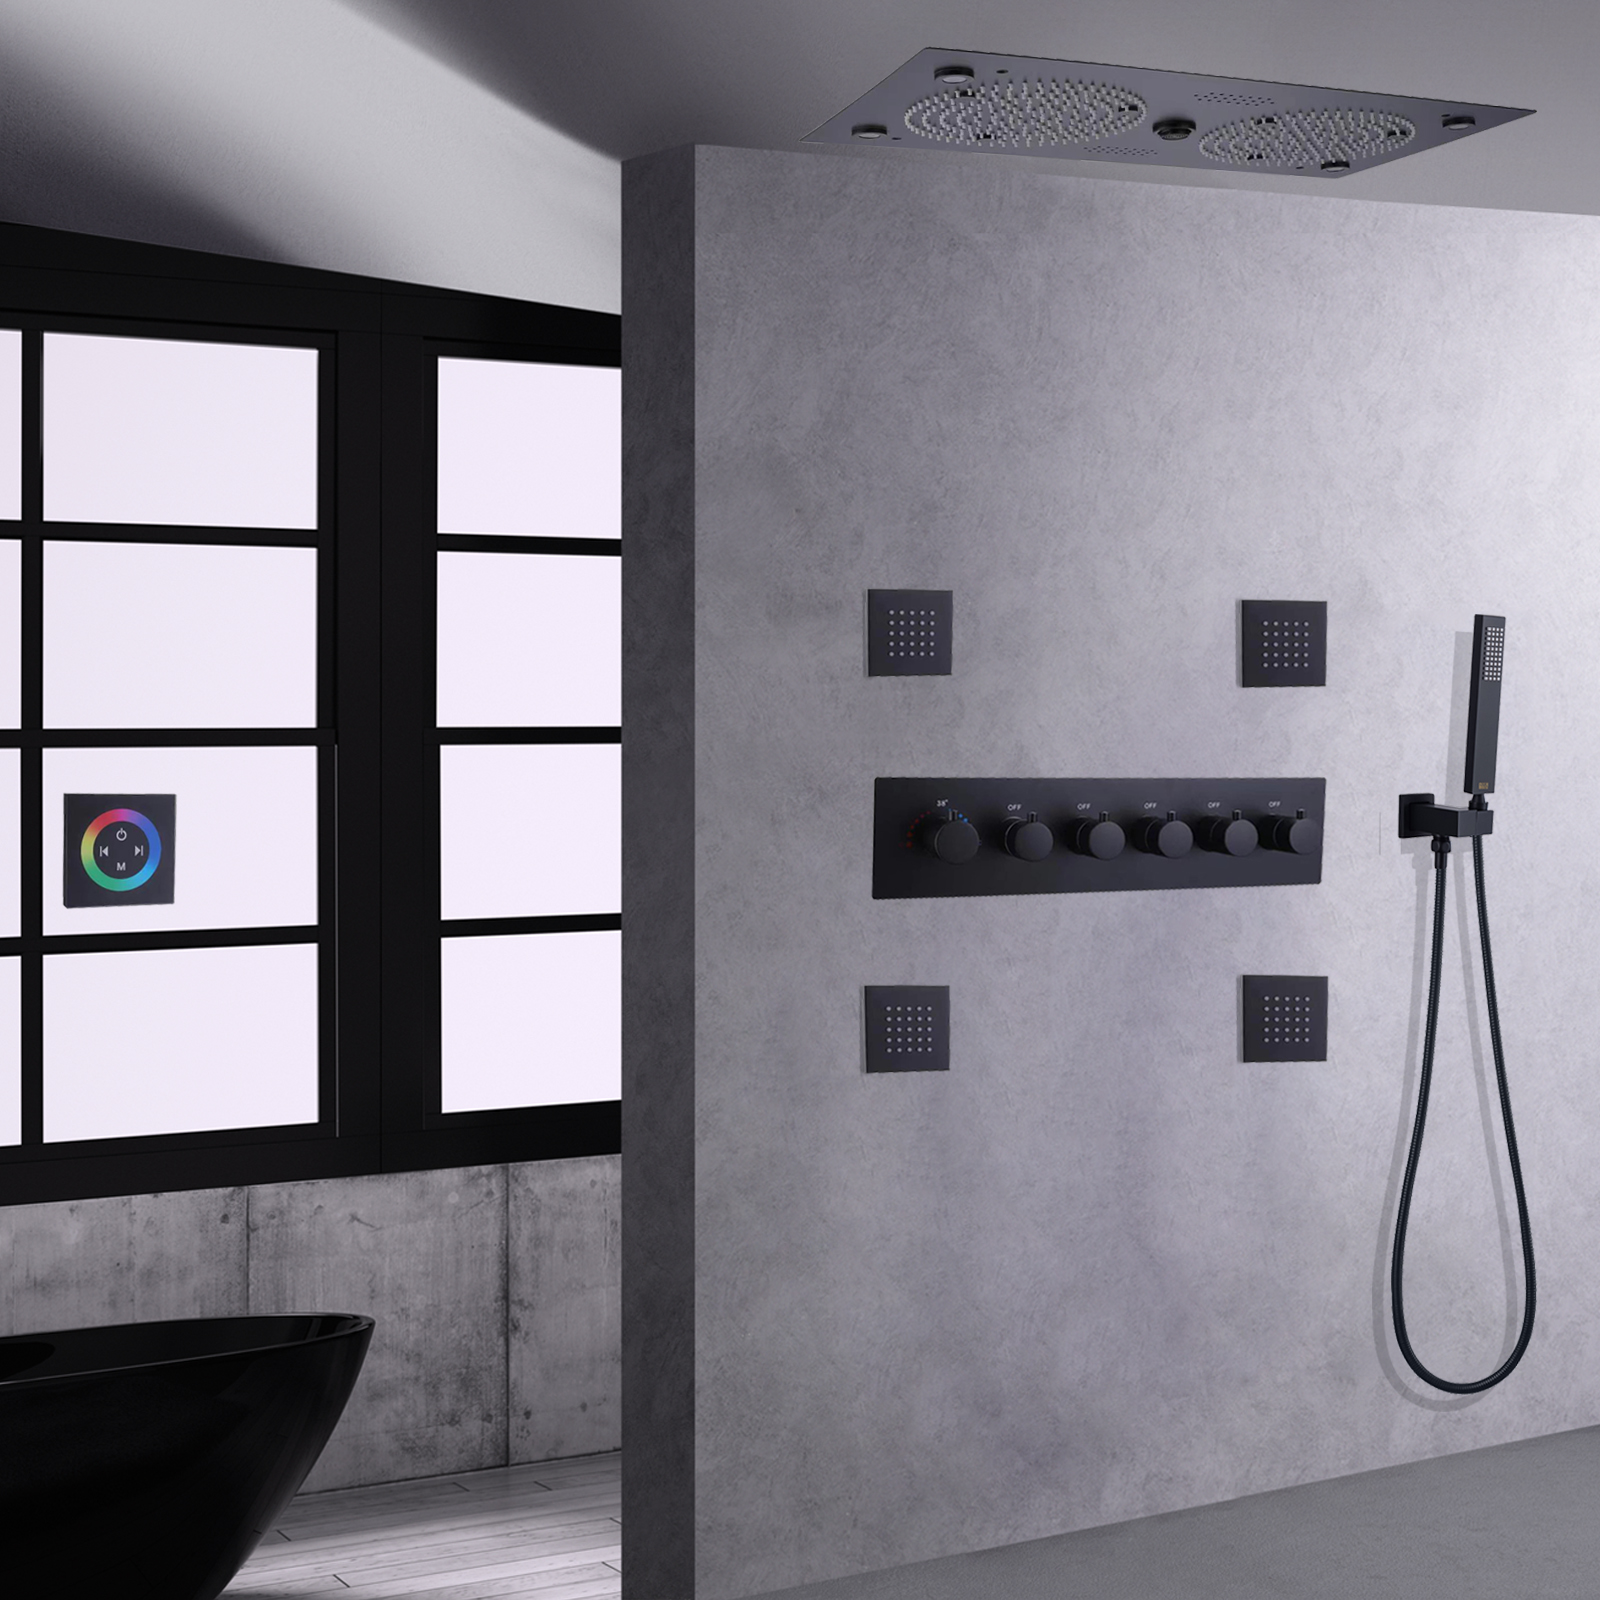 Moderno de alta qualidade colorido led música chuveiro preto fosco conjunto torneira massagem chuvas termostática